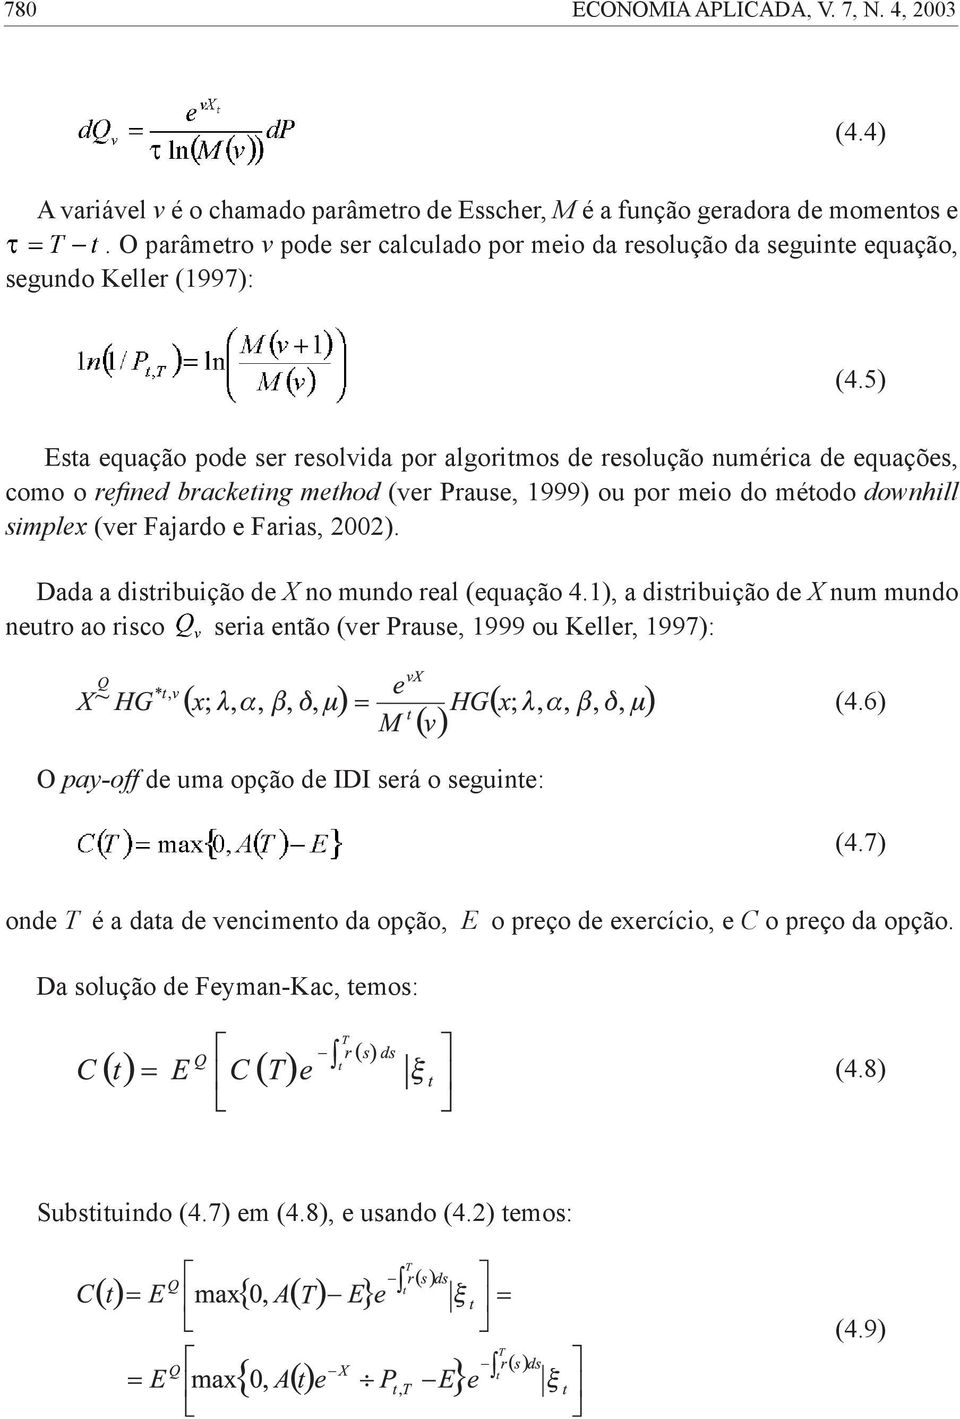 5) Esta equação pode ser resolvida por algoritmos de resolução numérica de equações, como o refined bracketing method (ver Prause, 1999) ou por meio do método downhill simplex (ver Fajardo e Farias,